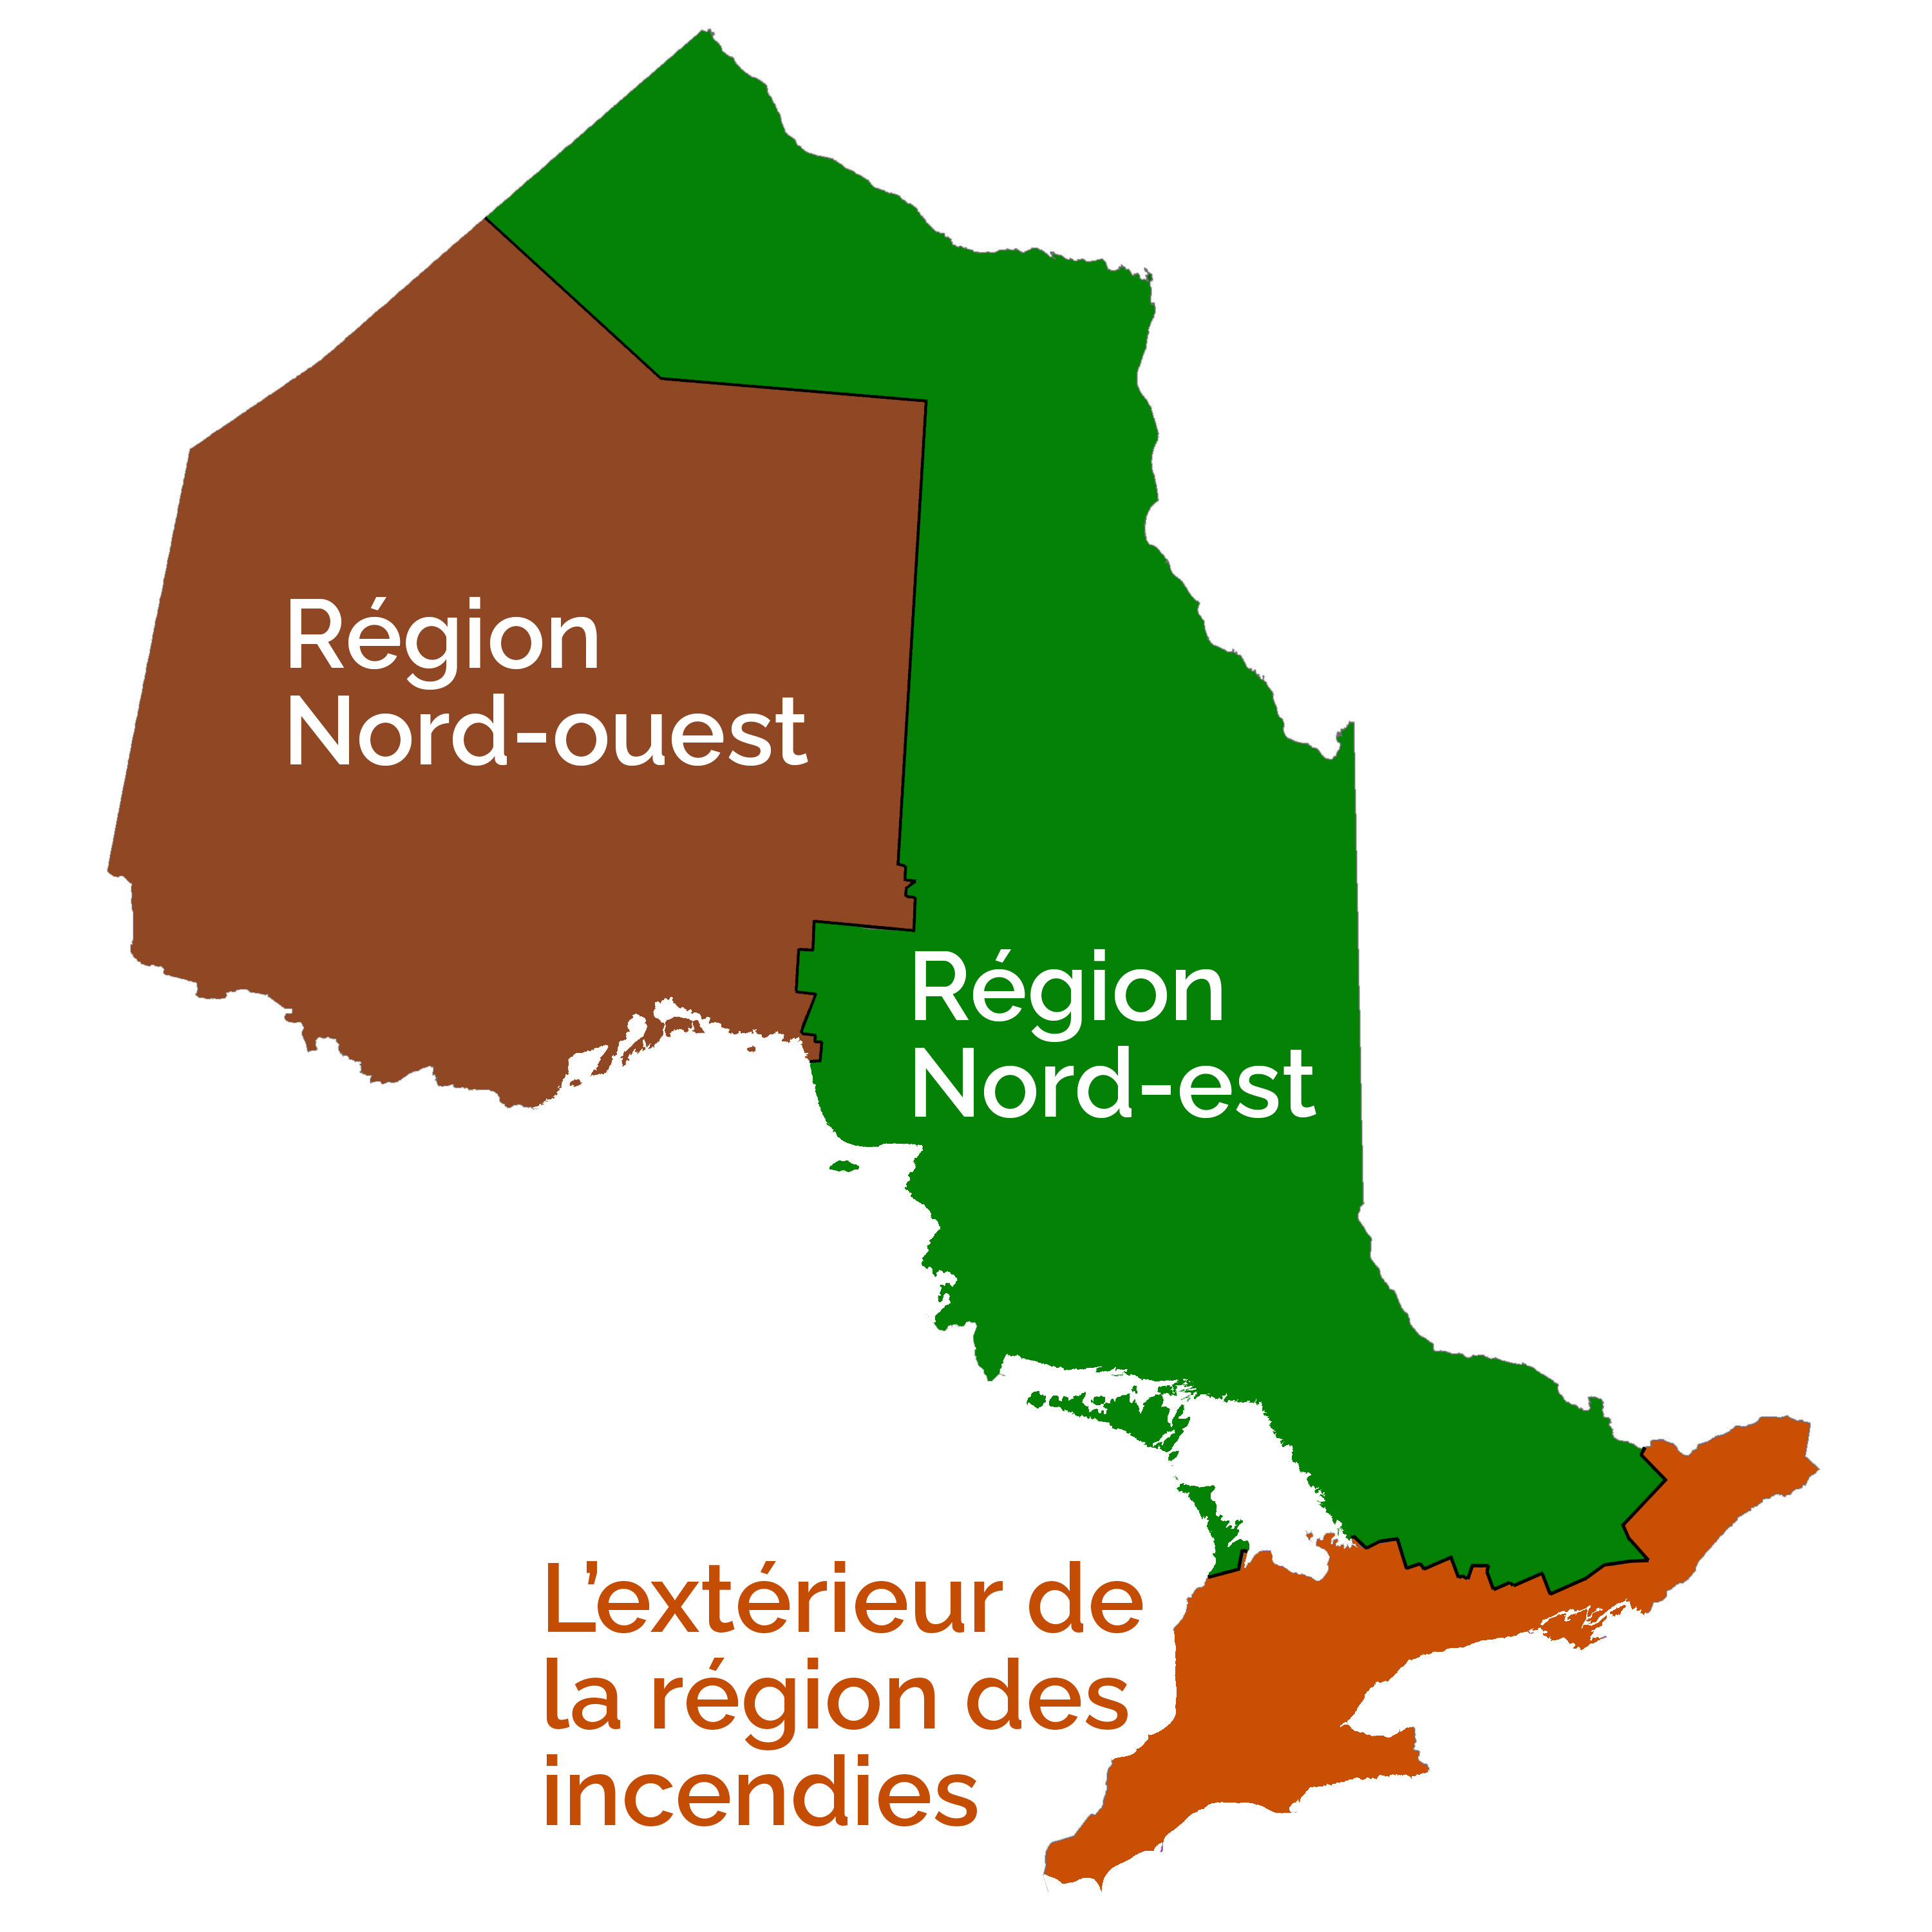 La région nord-ouest se trouve au nord et à l’ouest de Sault-Sainte-Marie. La région est se trouve à l’est de Sault-Sainte-Marie. Les territoires au sud d’Owen Sound et d’Ottawa sont à l’extérieur de la région d’incendies.